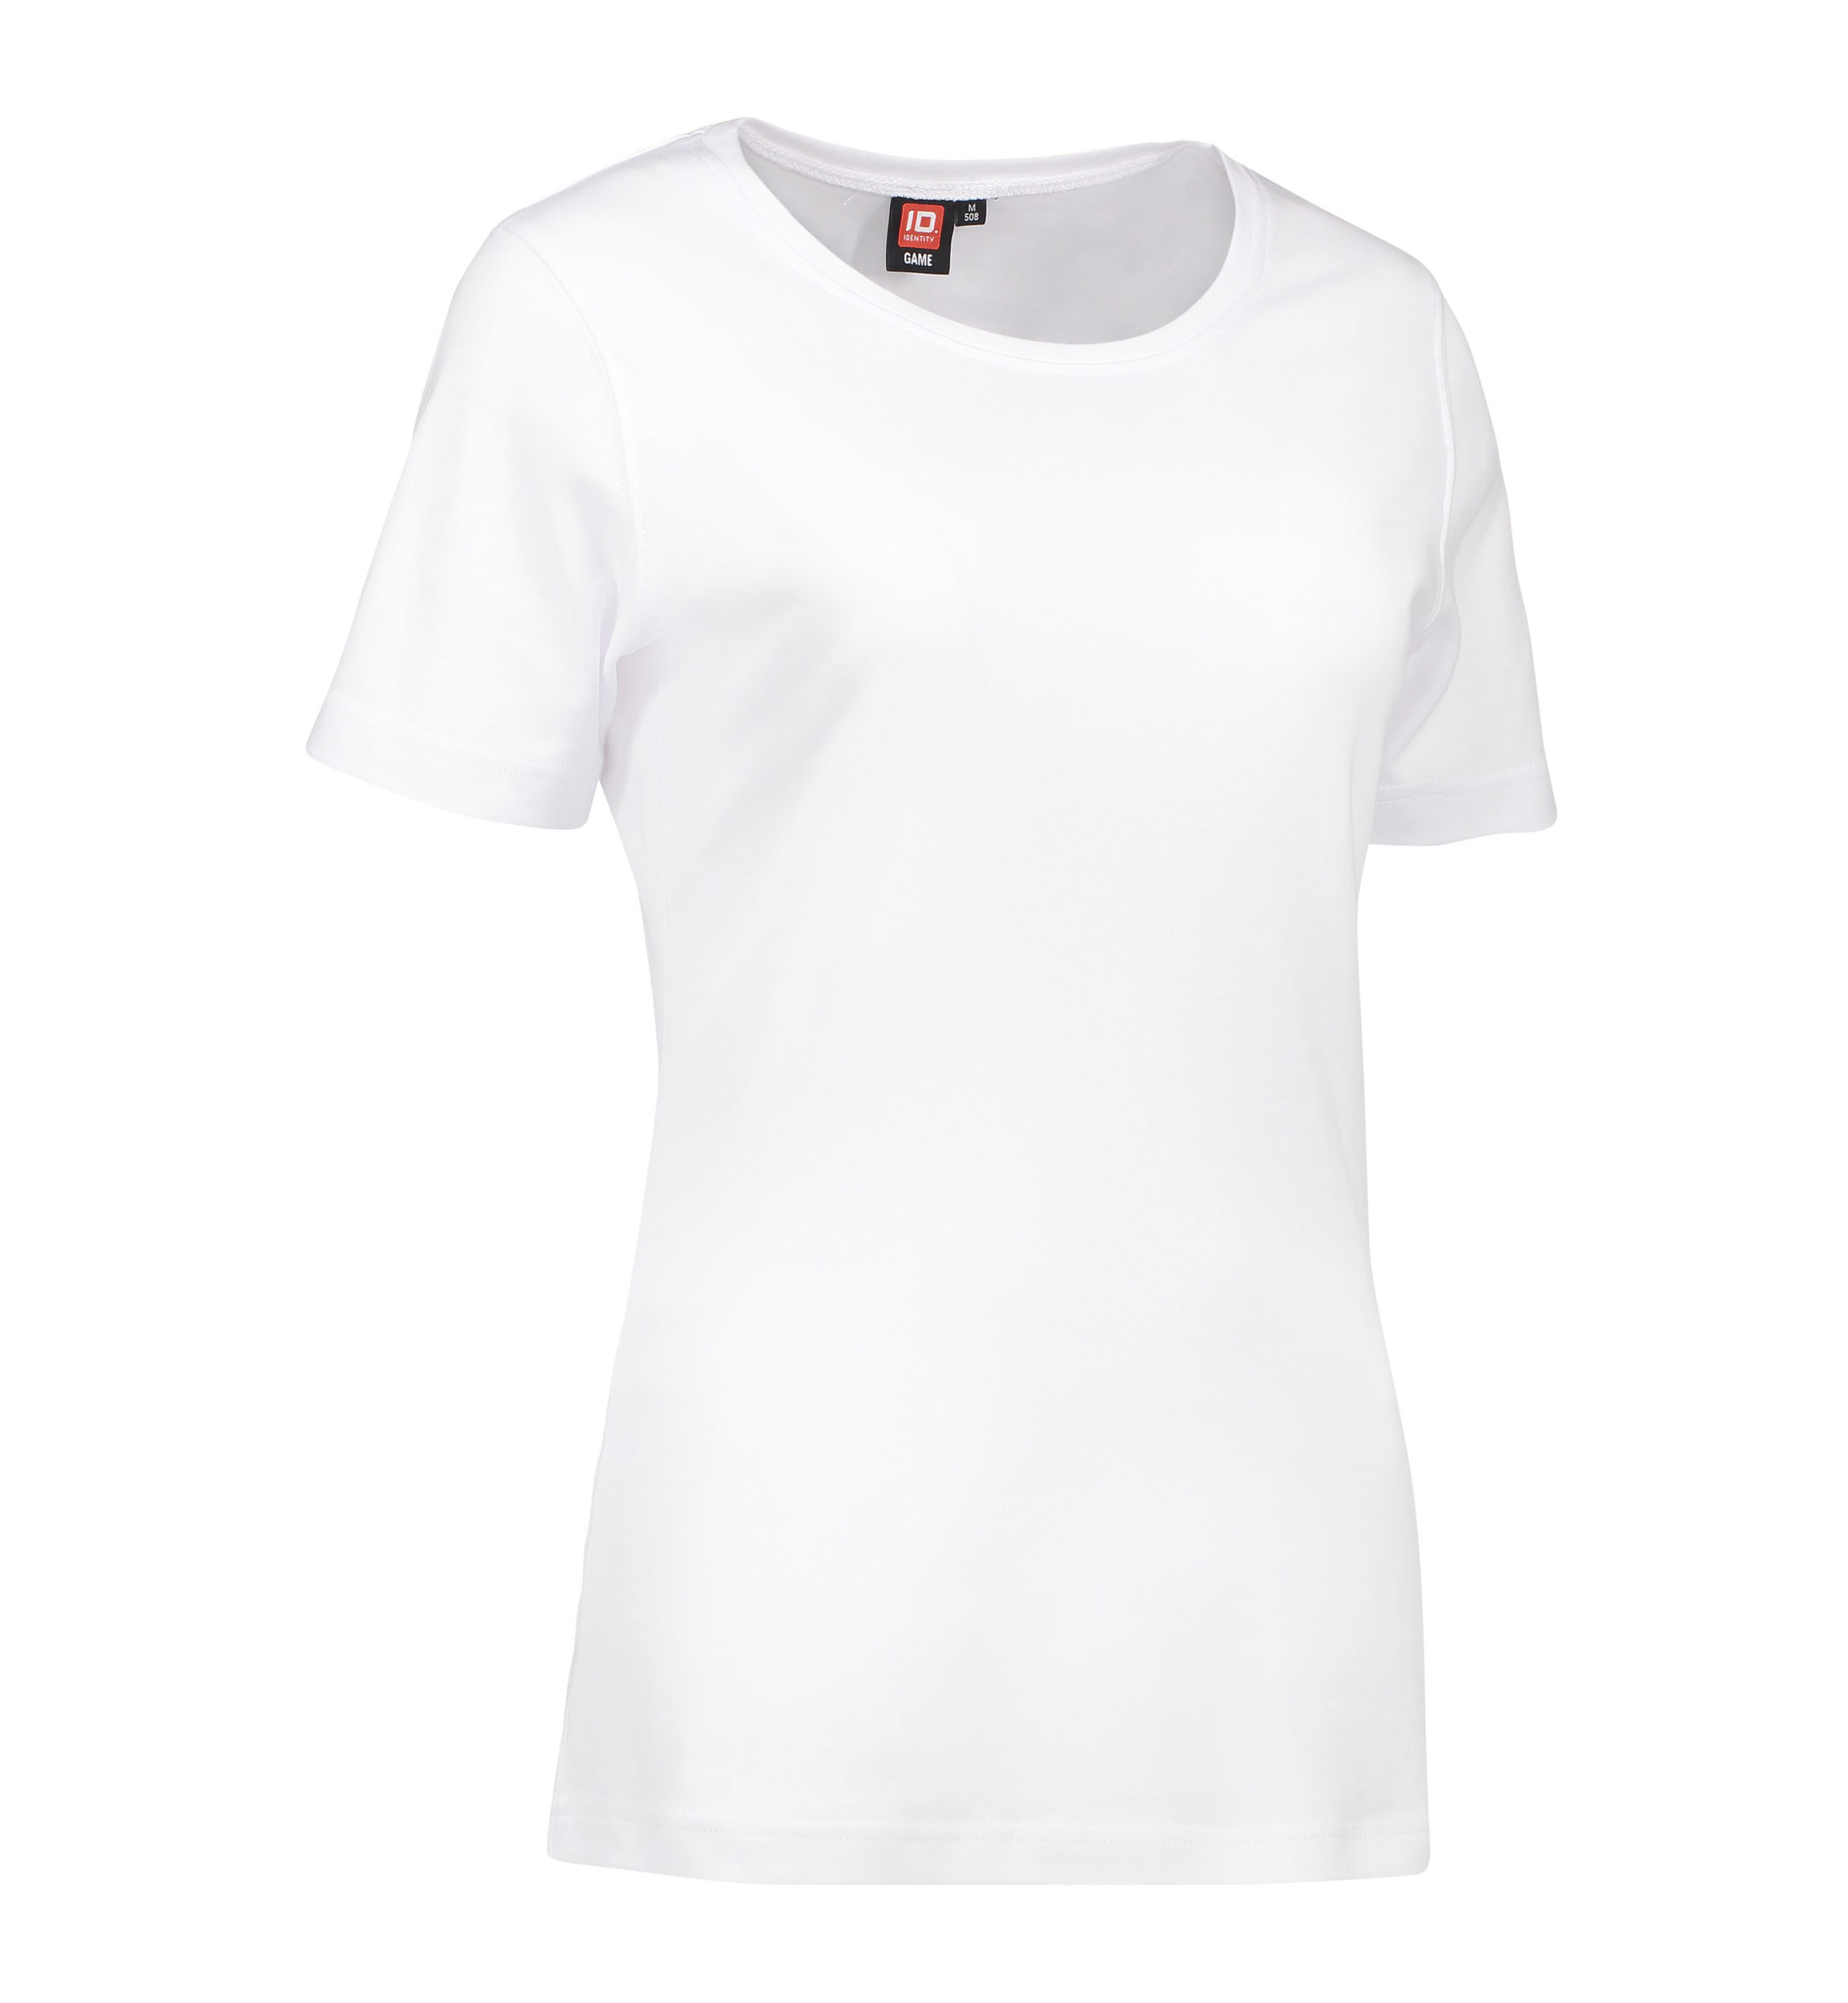 Billede af Dame t-shirt med rund hals i hvid - M hos Sygeplejebutikken.dk